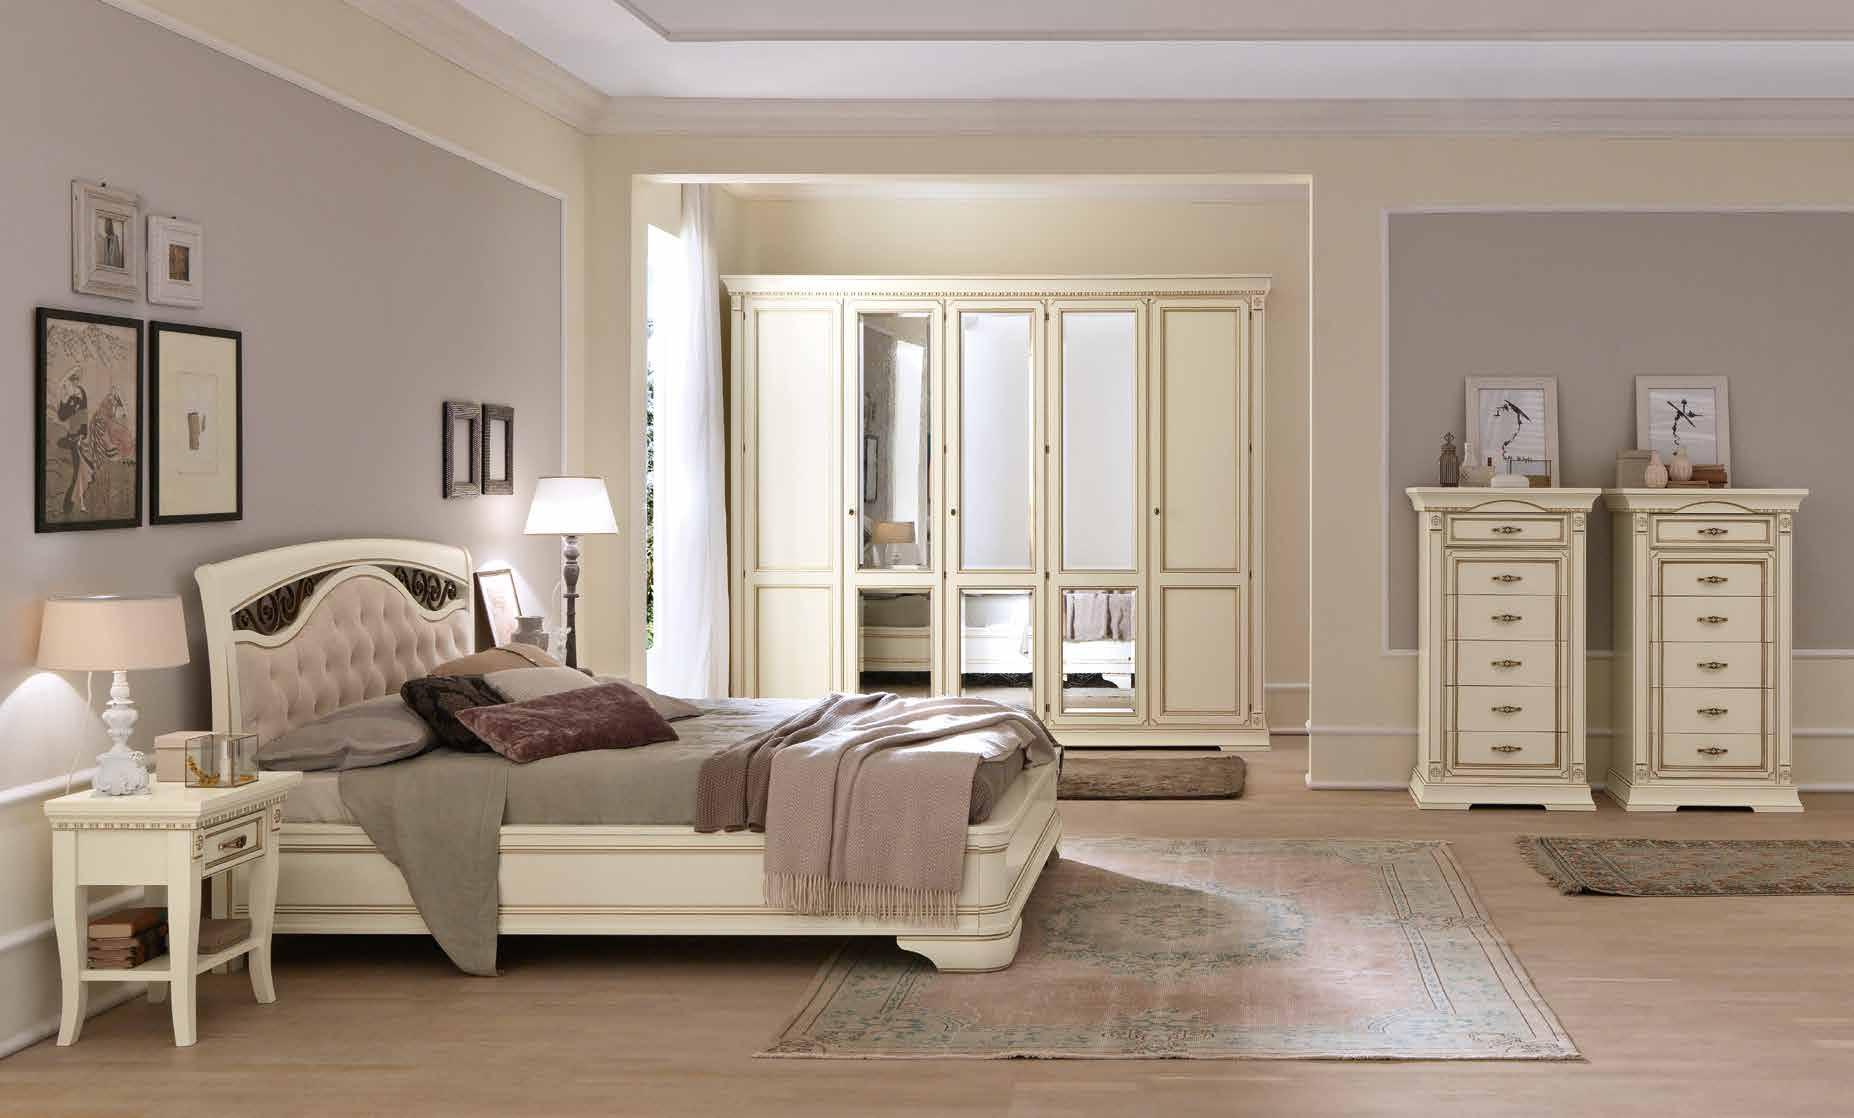 Кровать Prama Palazzo Ducale laccato, полуторная, с мягким изголовьем, с ковкой, без изножья, цвет: белый с золотом, 140x200 см (71BO73LT)71BO73LT